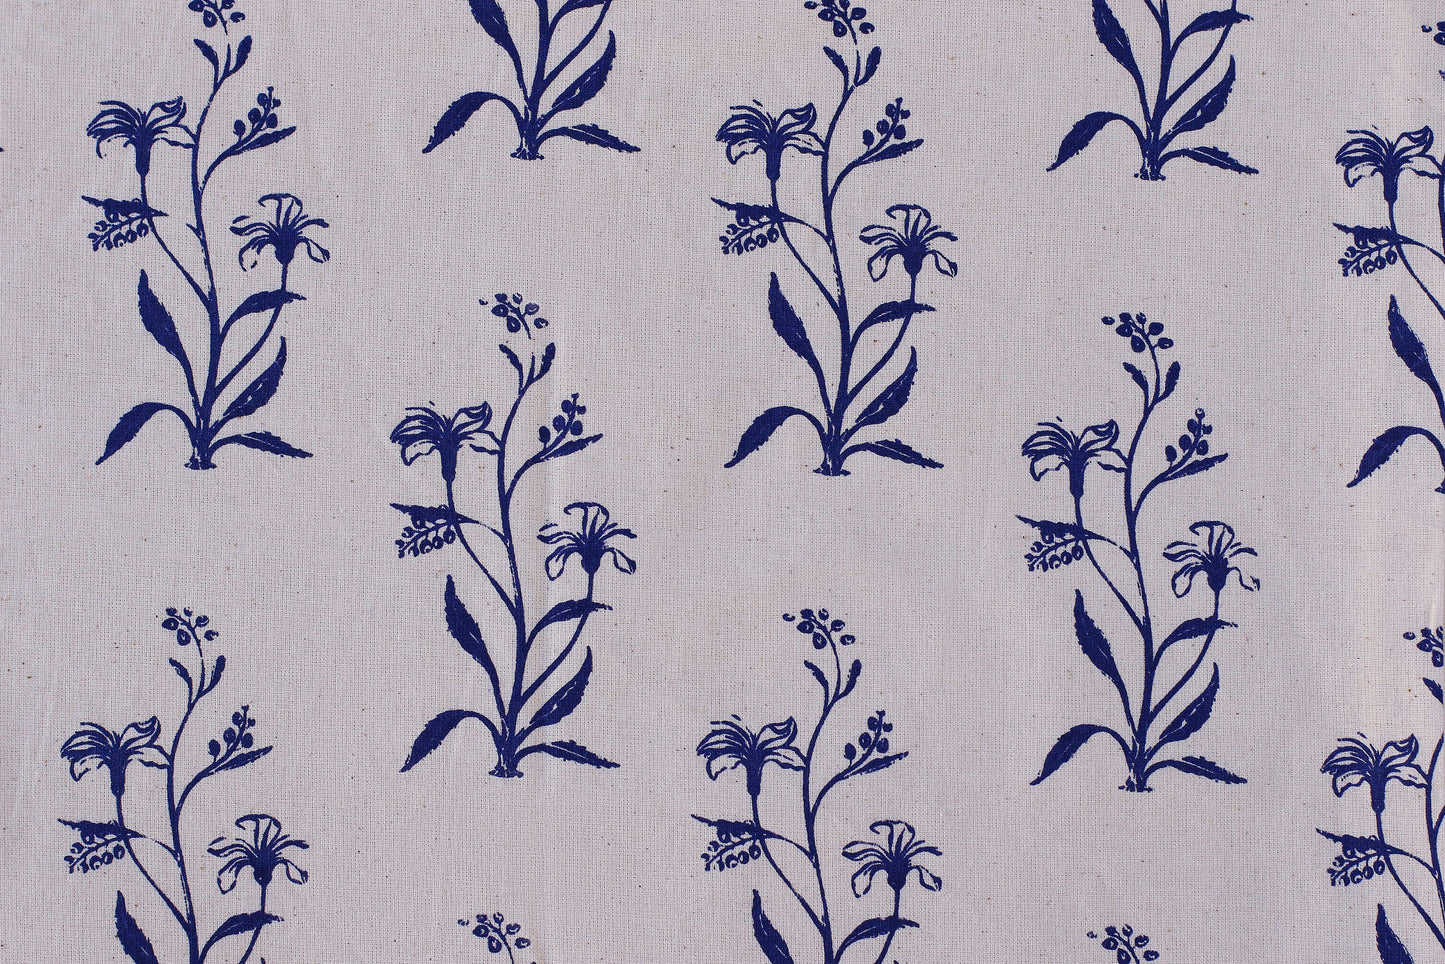 Lily Flower Textile - Marinblå - Ekologisk Vit 